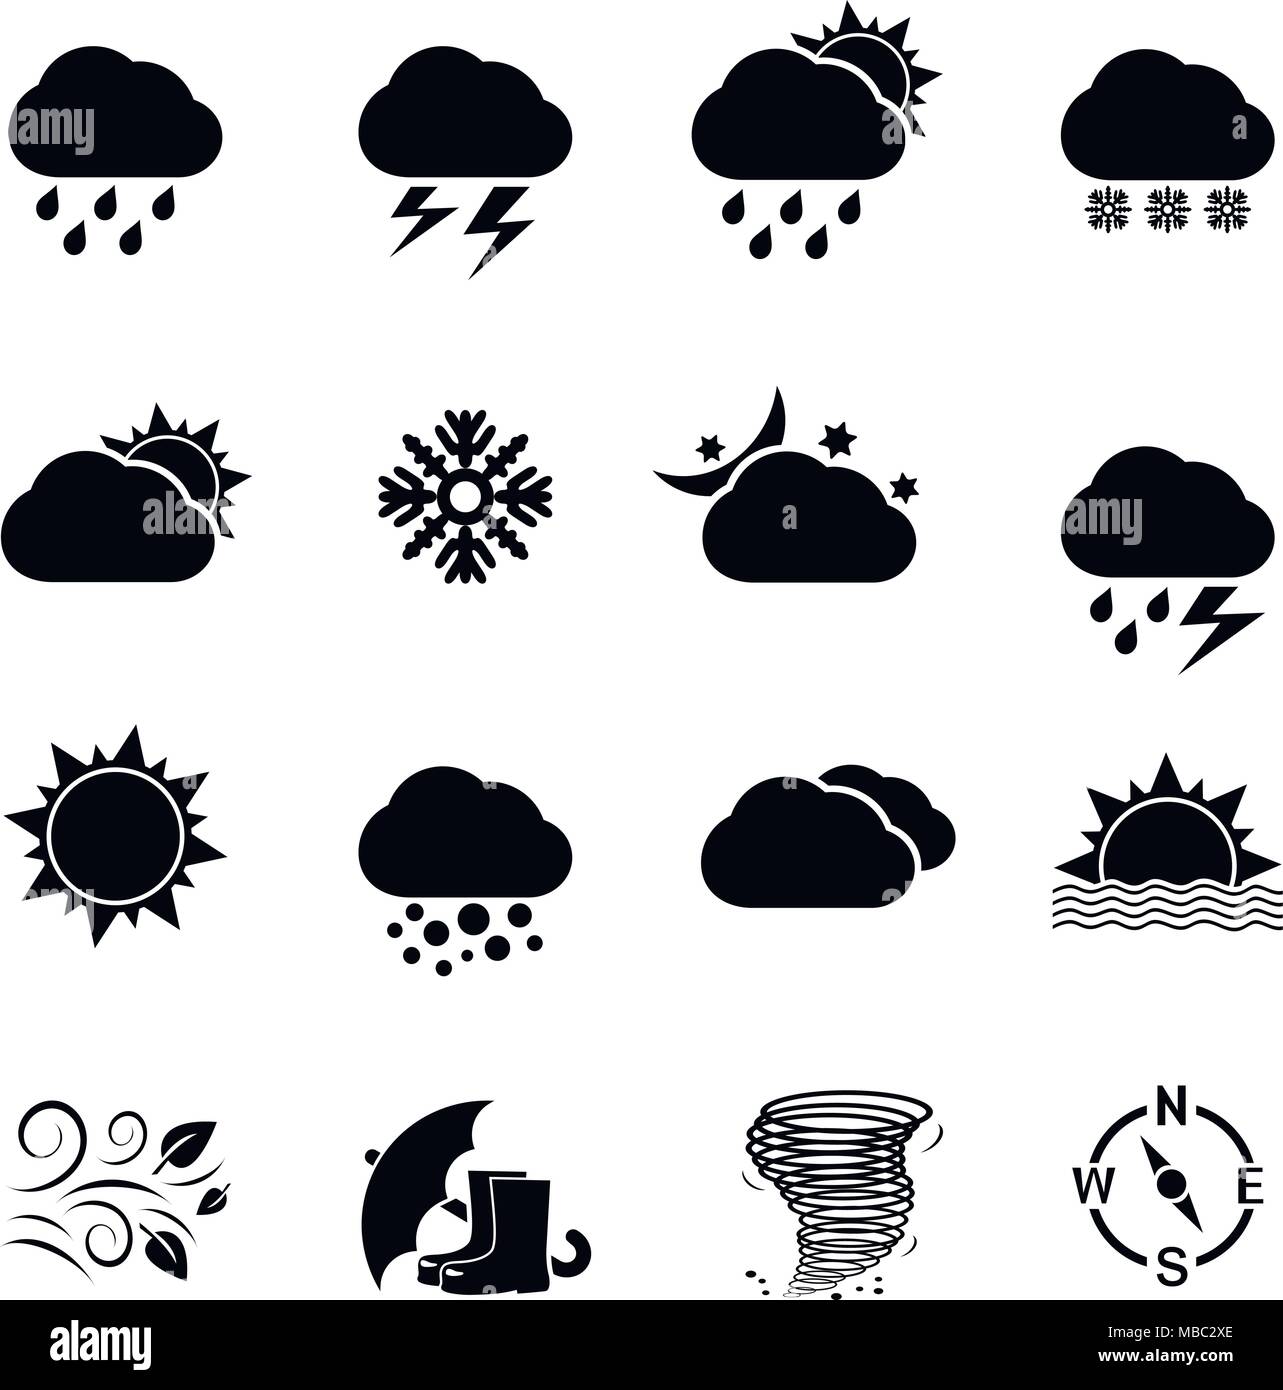 Wetter Icon Set. Vector Illustration. Stock Vektor